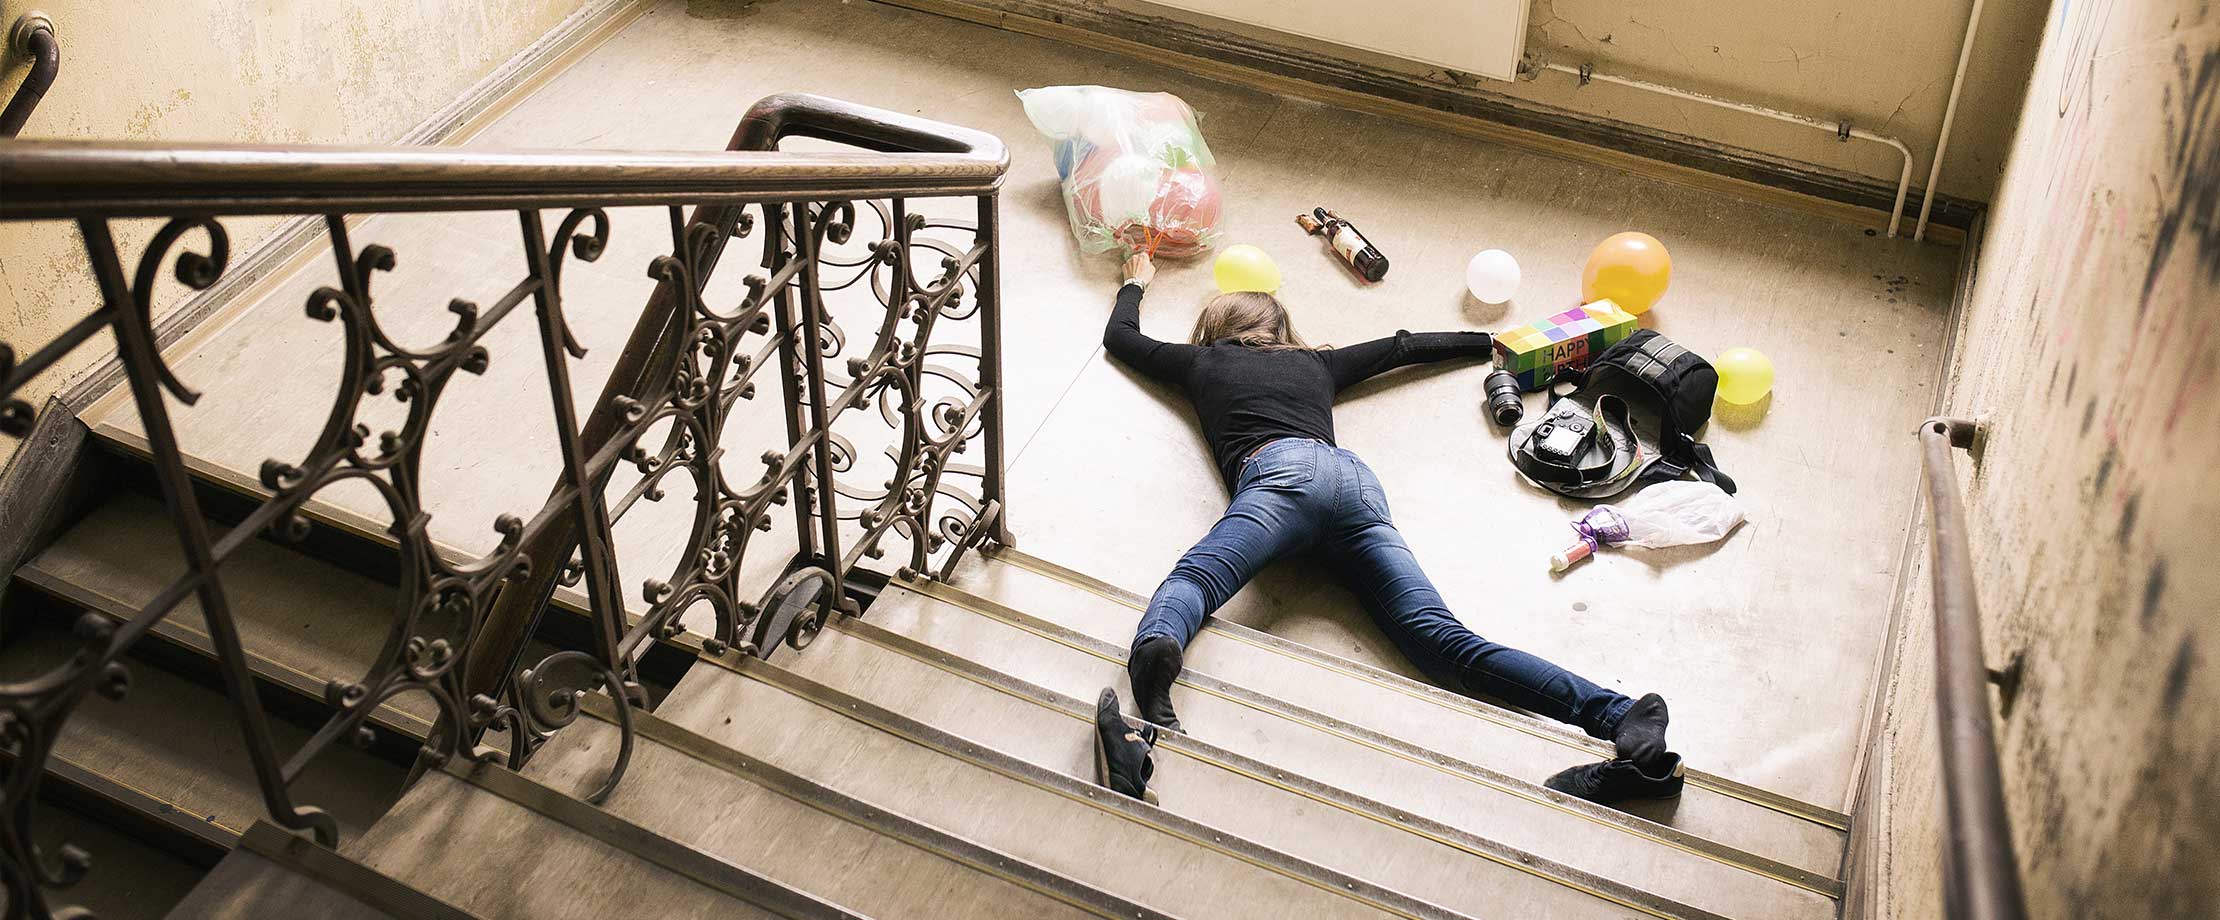 Eine Frau liegt am Fuß einer Treppe, nachdem sie gestürzt ist. Um Sie herum liegen Einkäufe, ihre Tasche, eine Kamera und ein Geburtstagsgeschenk.